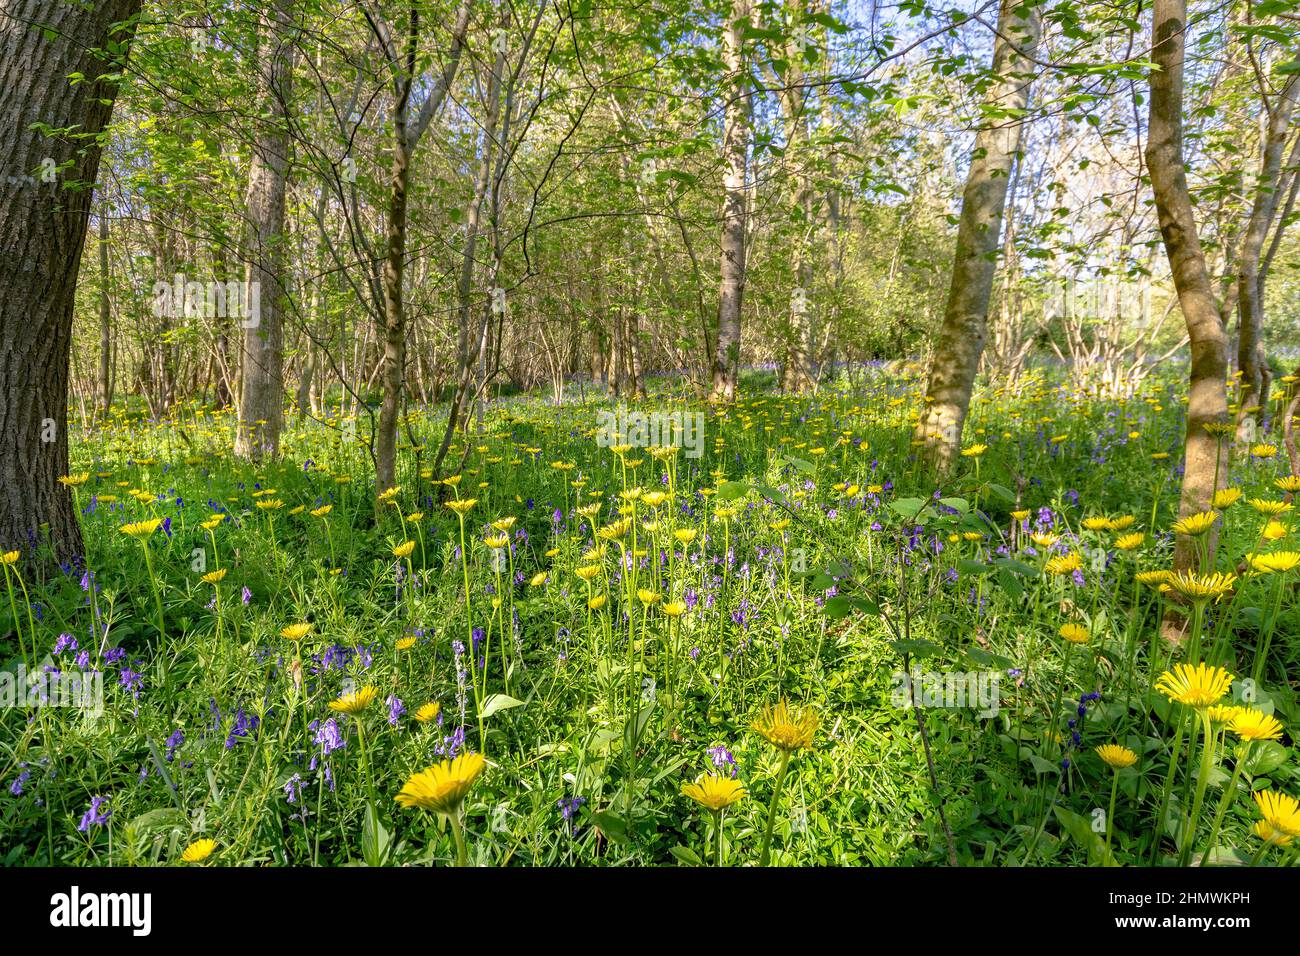 Bois et fleurs des bois au printemps dans la baie de Somme. Jacynthes sauvage, Arnica, ail des our. Foto Stock